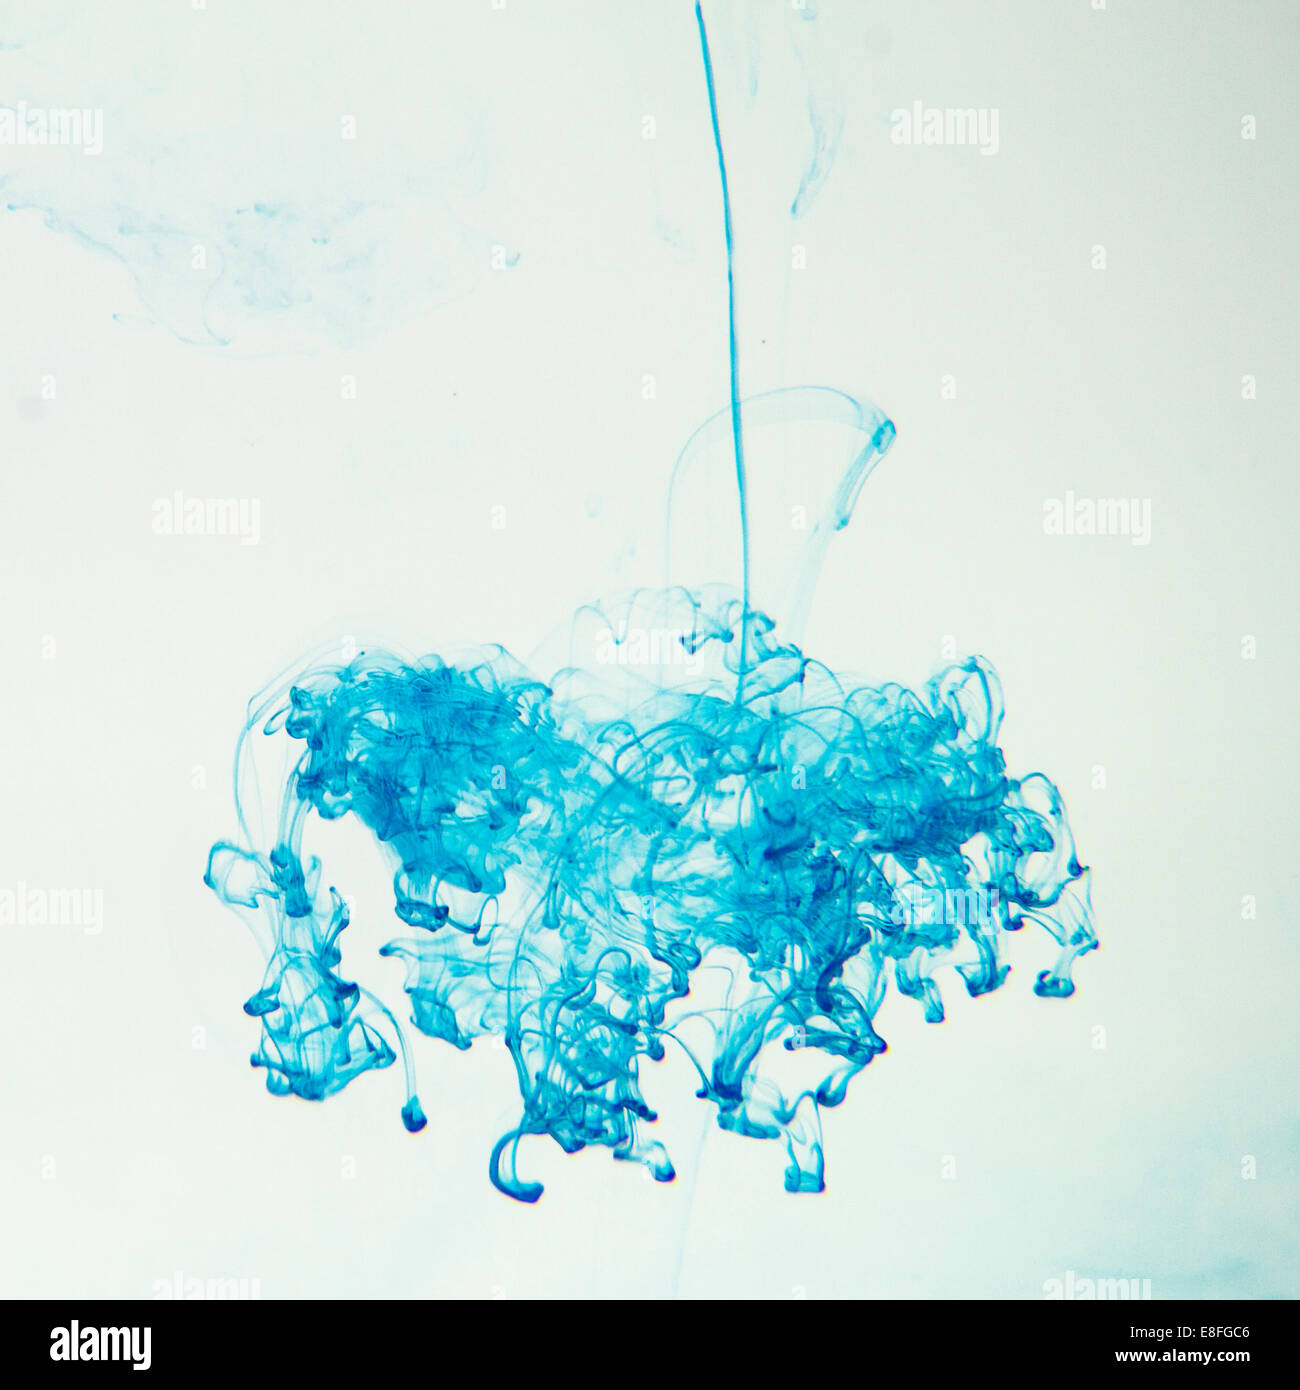 Inchiostro blu sciogliendo in acqua Foto Stock